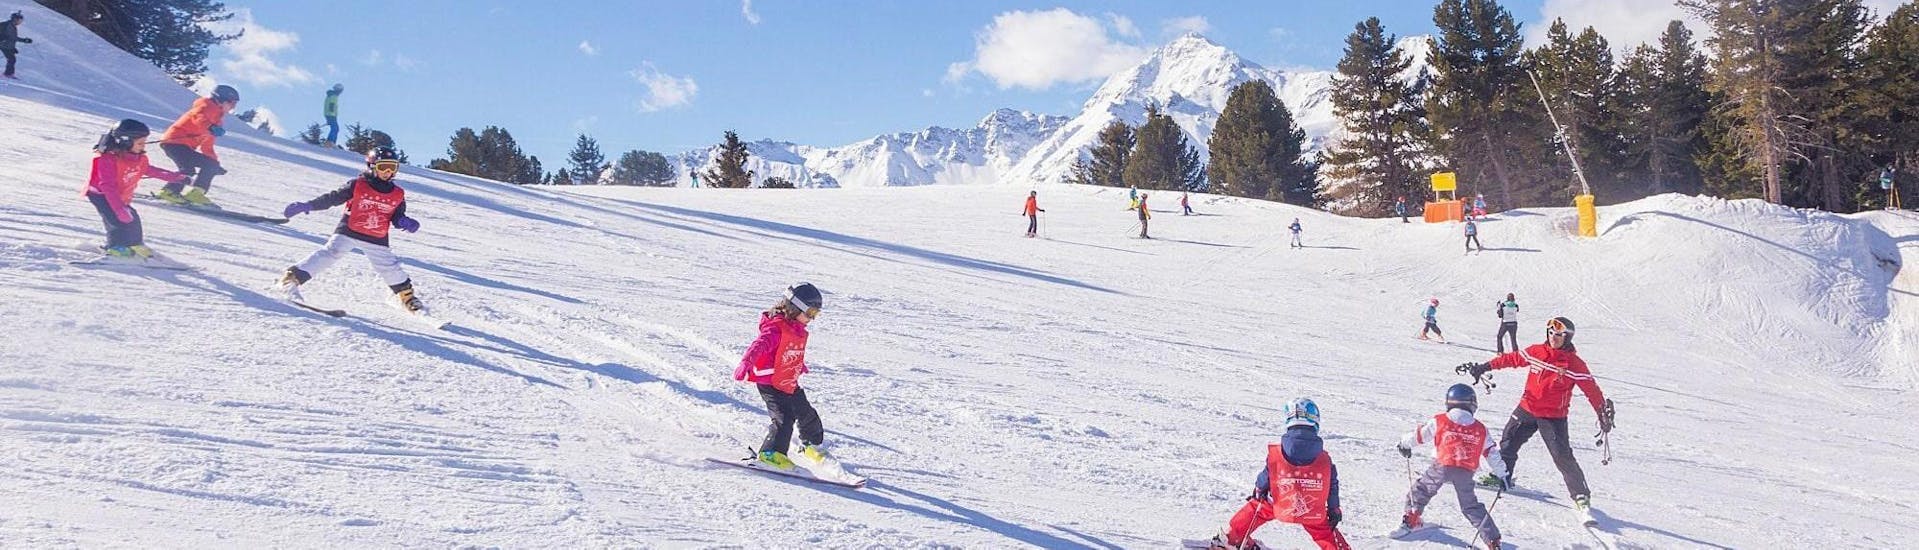 Le moniteur de ski de l'école de ski Sertorelli Bormio est sur les pistes avec les participants du Cours de ski Enfants (4-12 ans) pour Skieurs avancés - Journée.